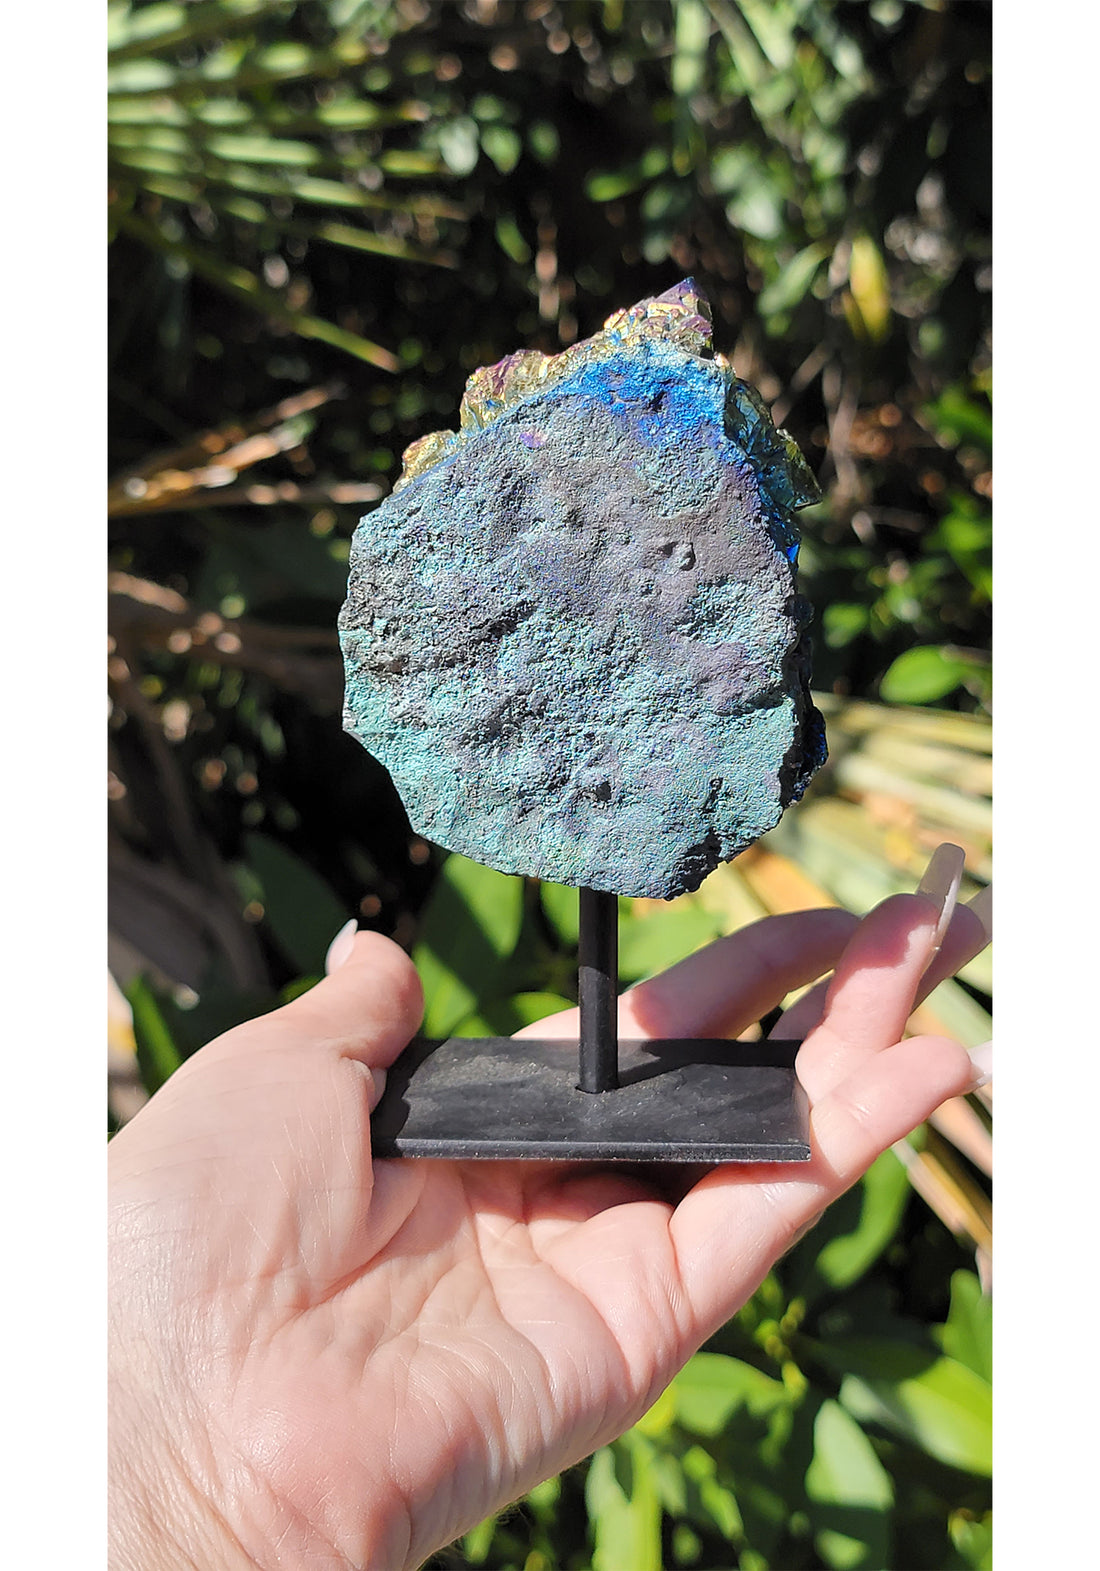 Rainbow Titanium Aura Quartz Gemstone Druzy Cluster Display 5